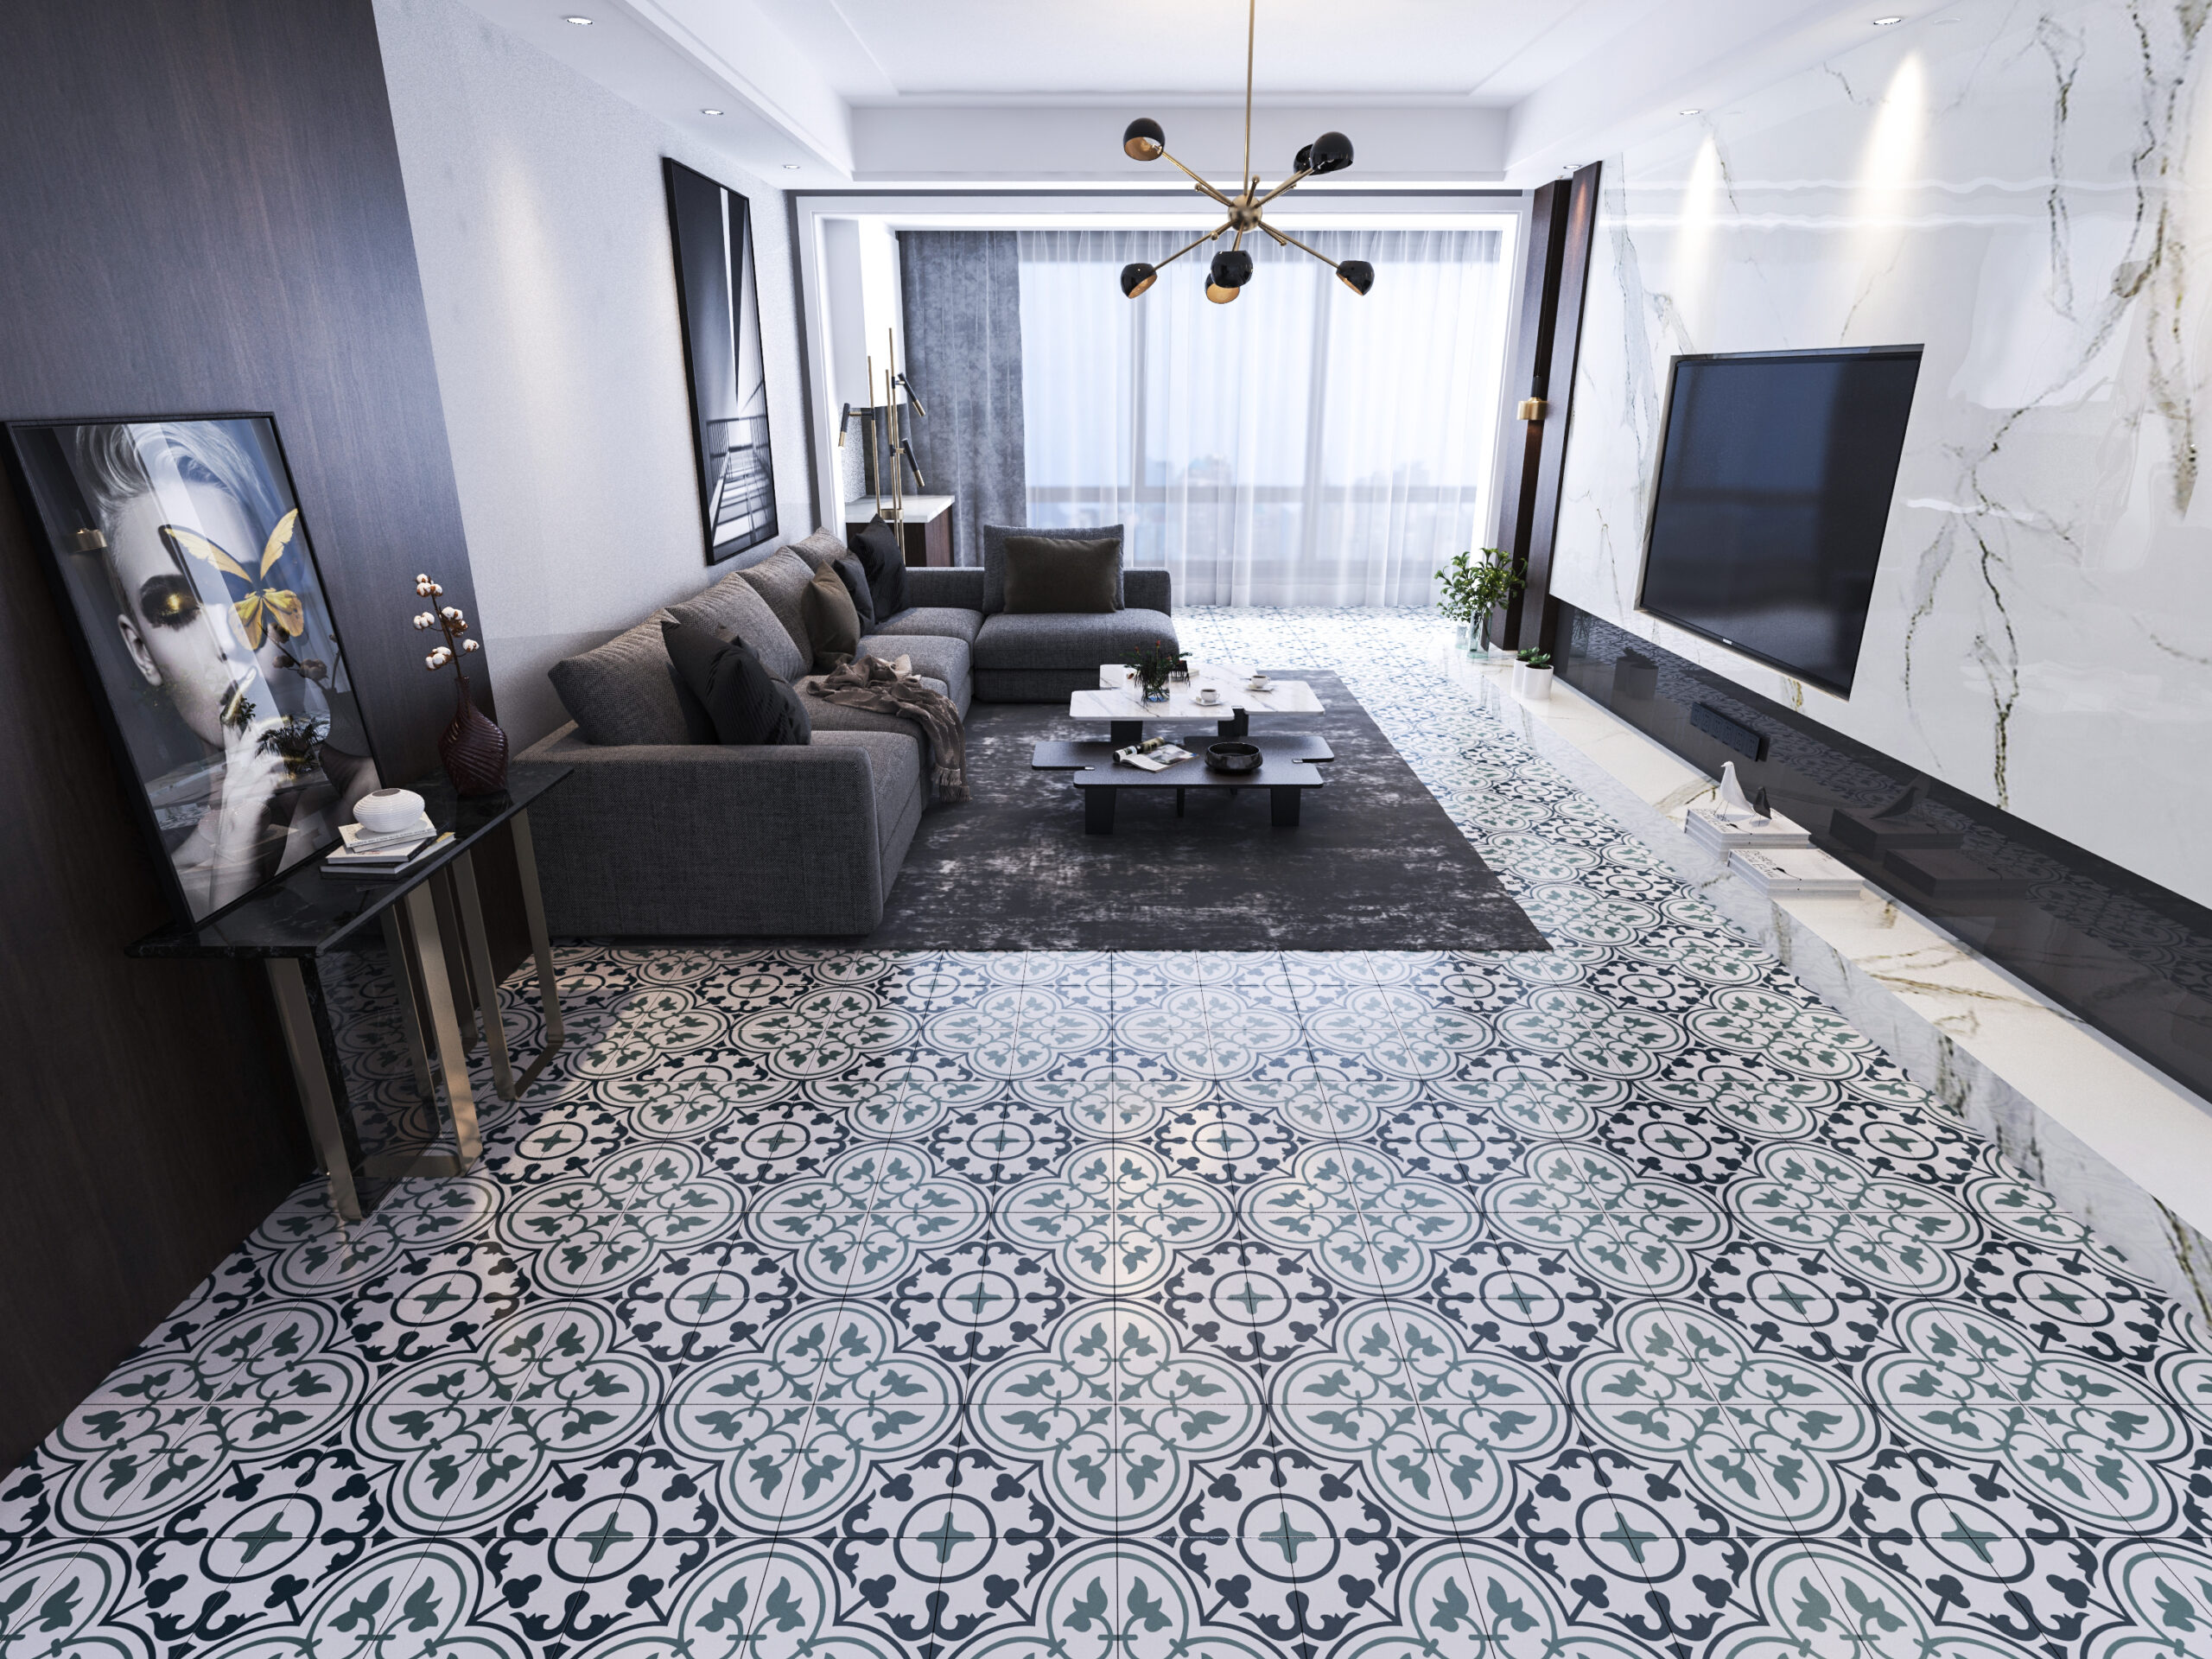 Tiles in Living Room scaled Accueil carreaux de ciment